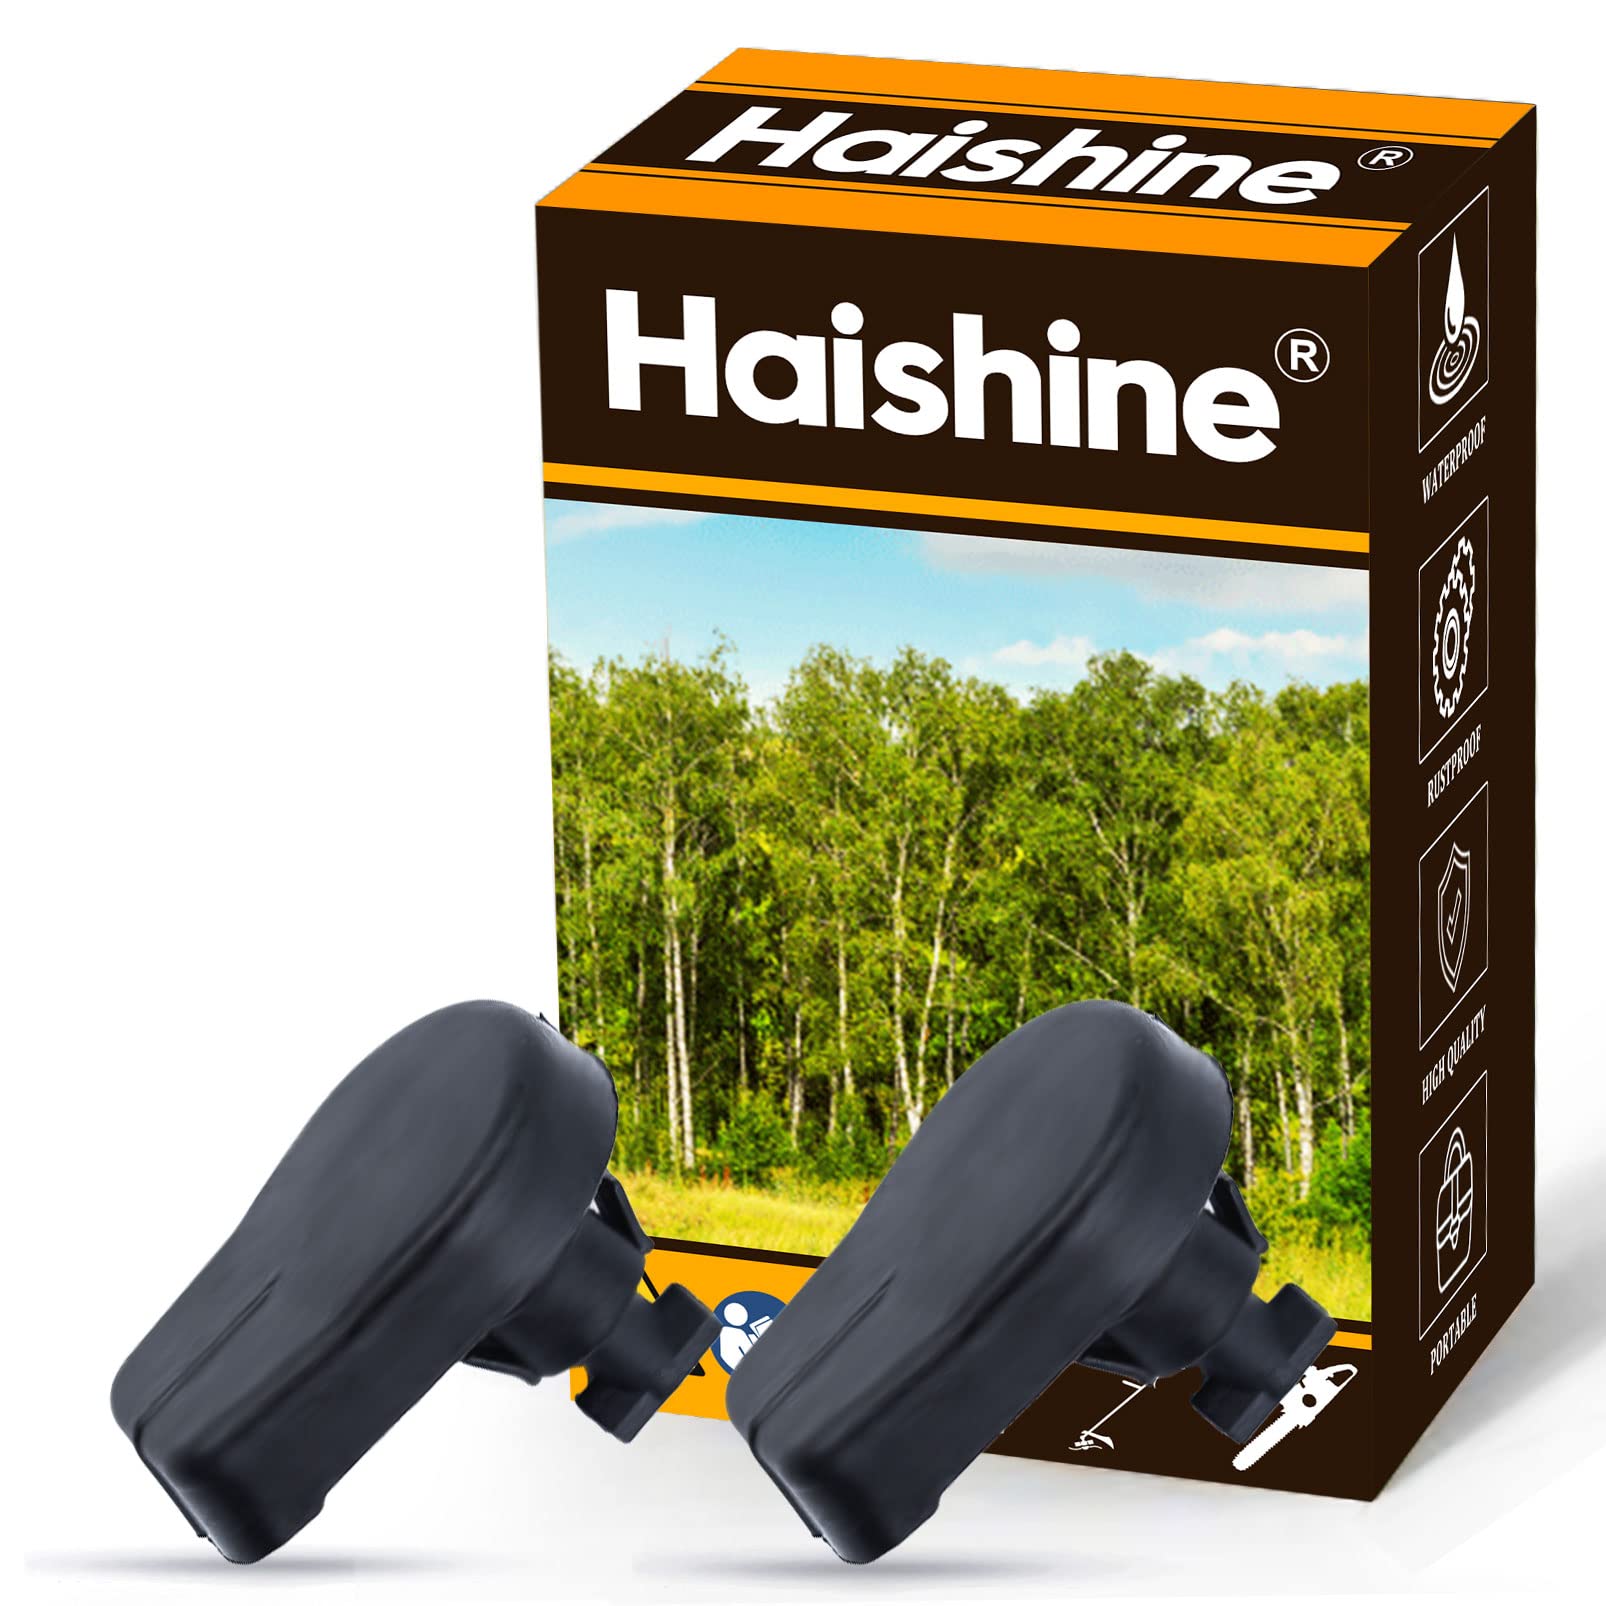 Haishine 2 Teile/los Luftfilterdeckel Twist Lock Knob für Stihl 021 023 025 MS210 MS230 MS250 MS290 MS310 MS390 Kettensäge 1123 141 2301 von HAISHINE